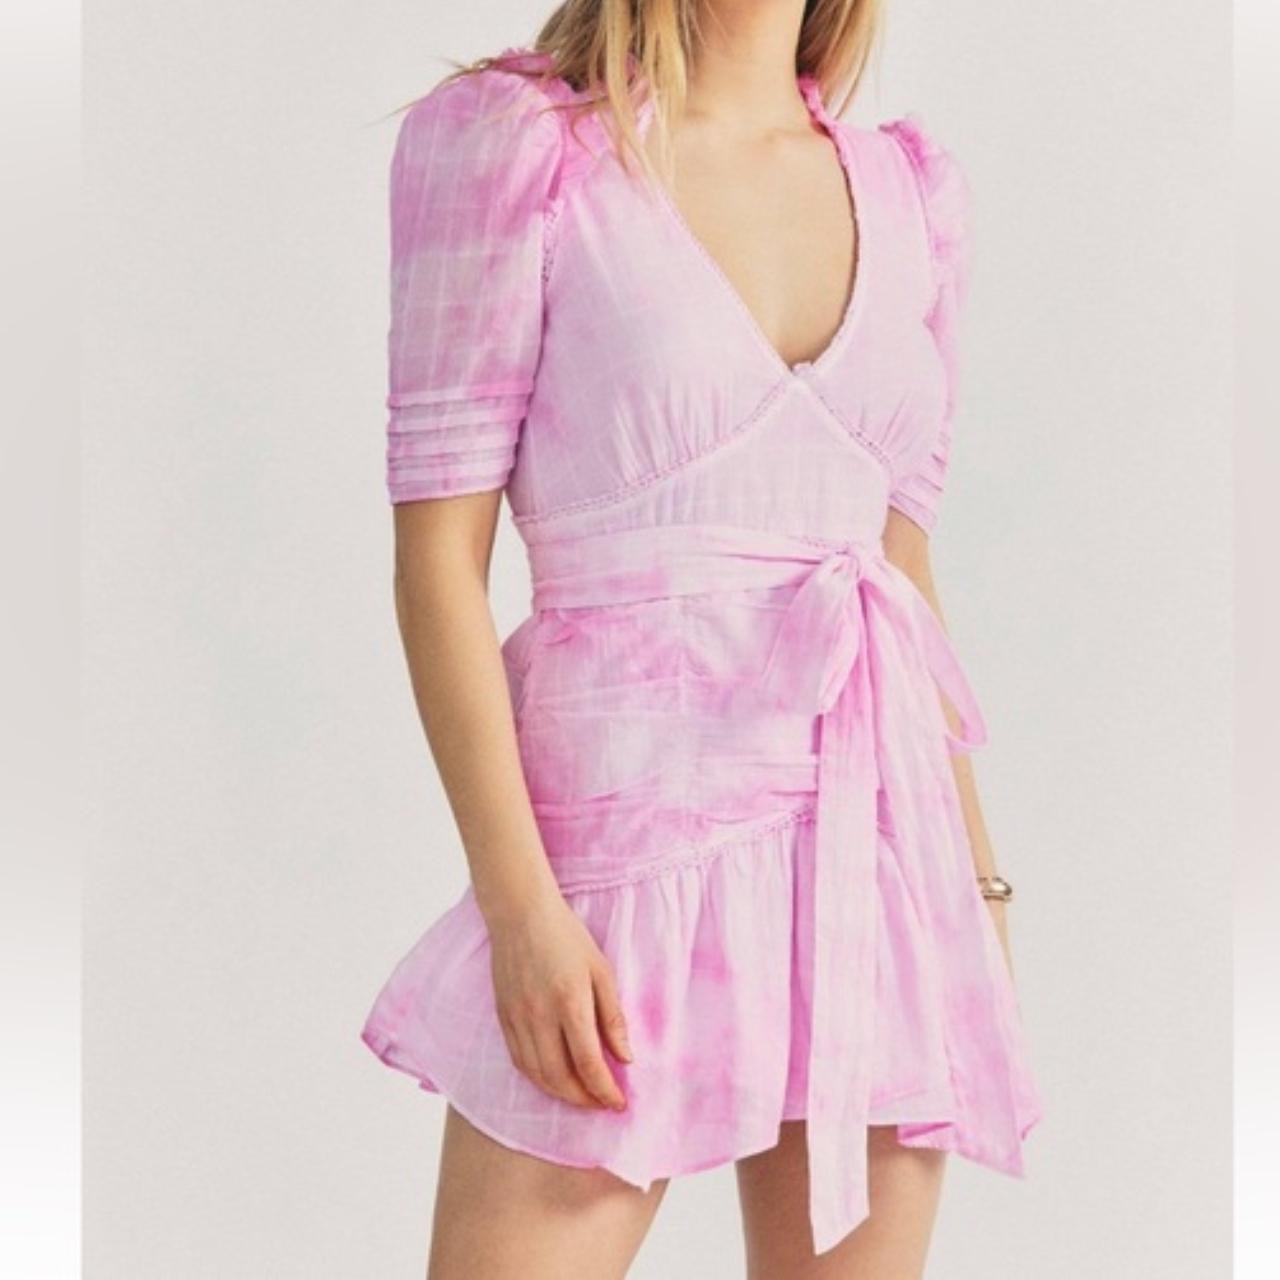 LoveShackFancy Pink Tie-Dye Dress ☆ Size: Women's... - Depop